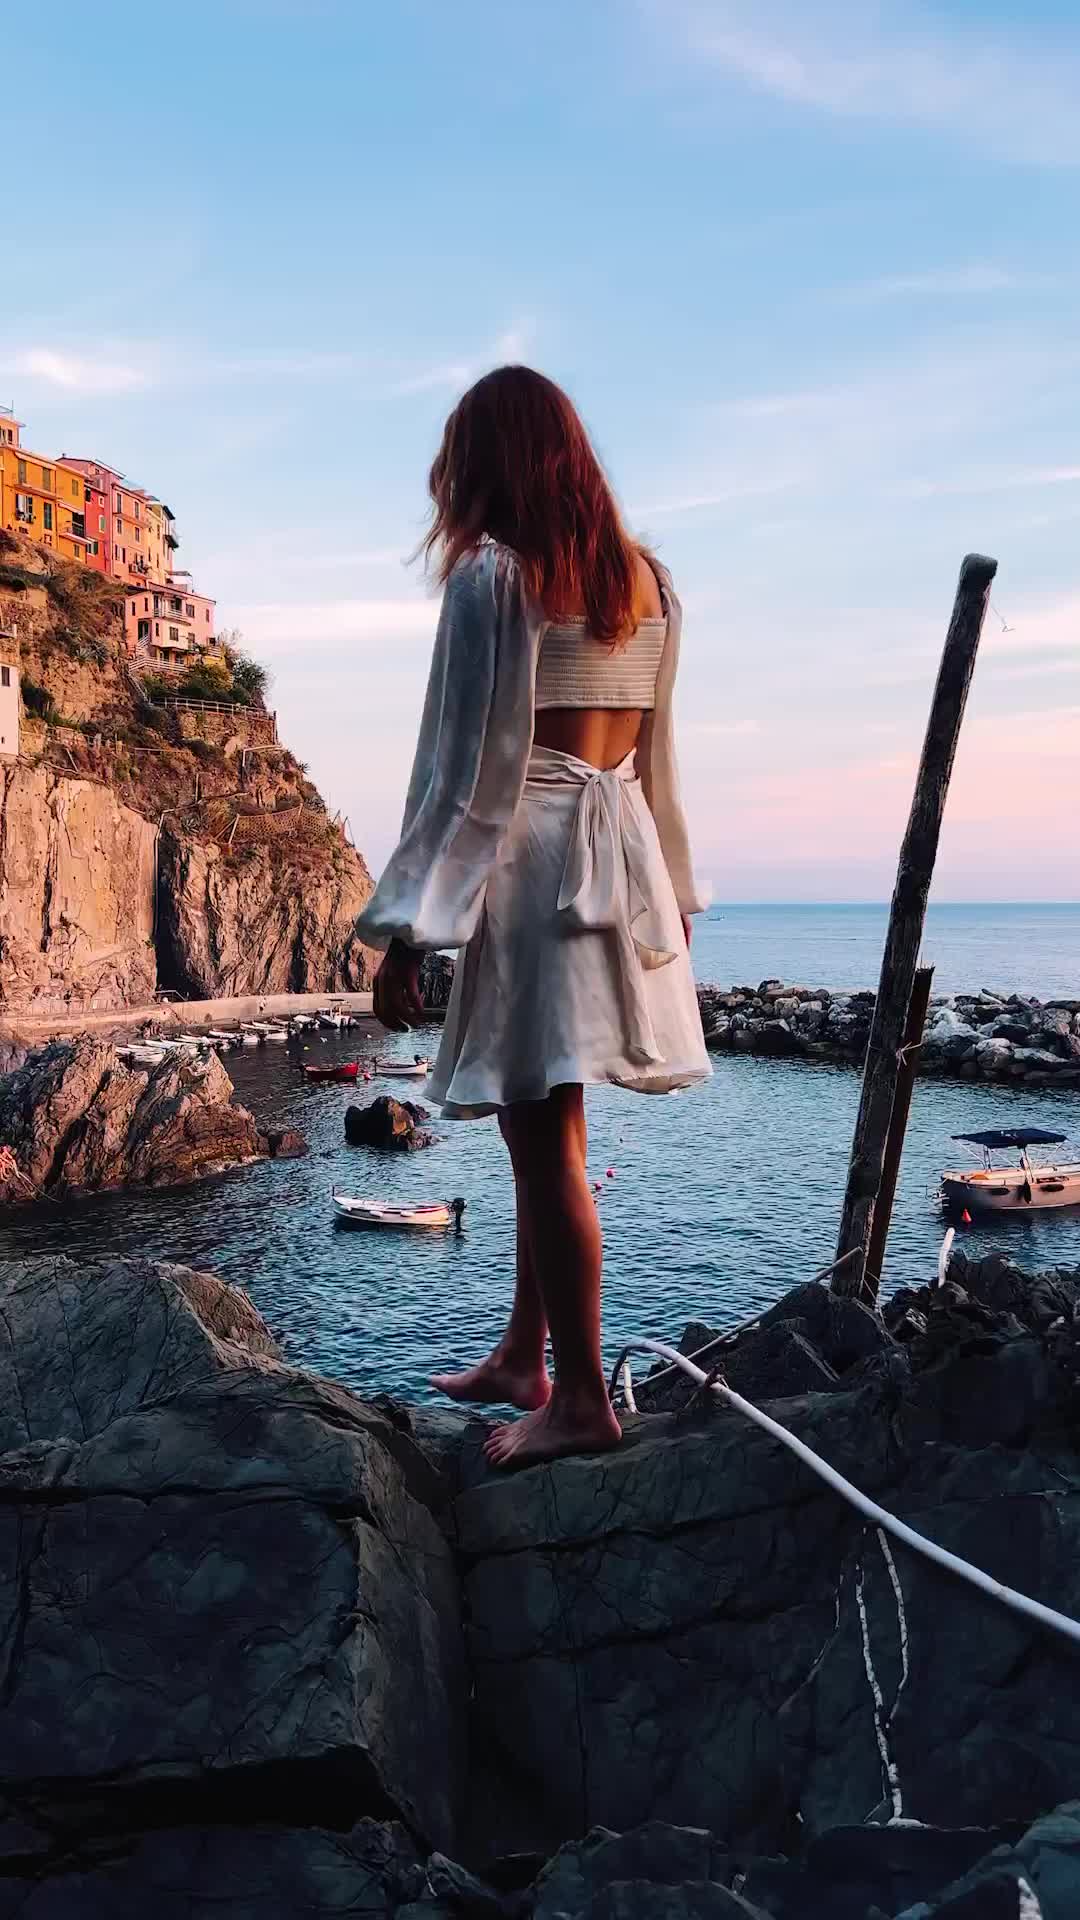 Discover the Magic of Manarola, Cinque Terre at Sunset